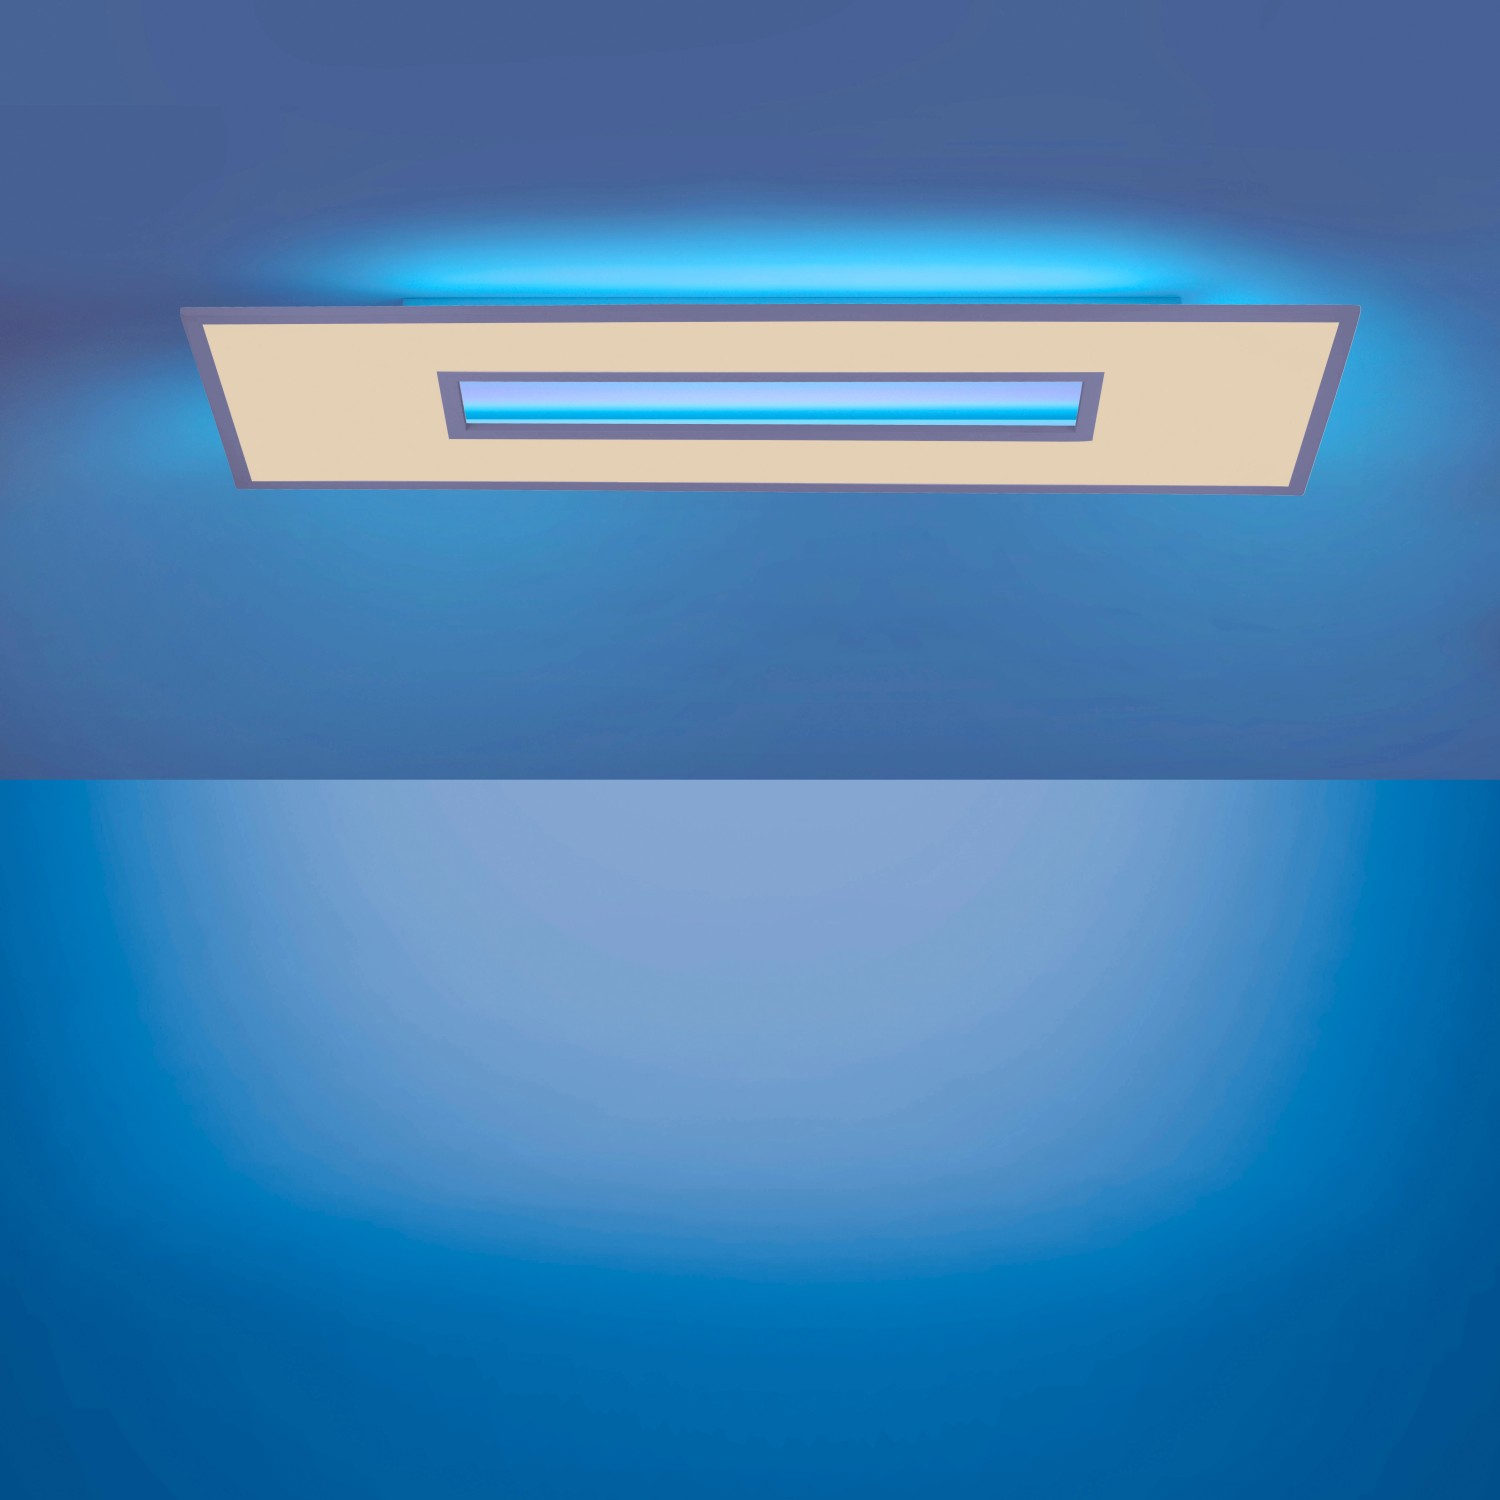 LED-Deckenleuchte Recess 120 x 40 cm, 2700-5000 K, RGB kaufen bei OBI